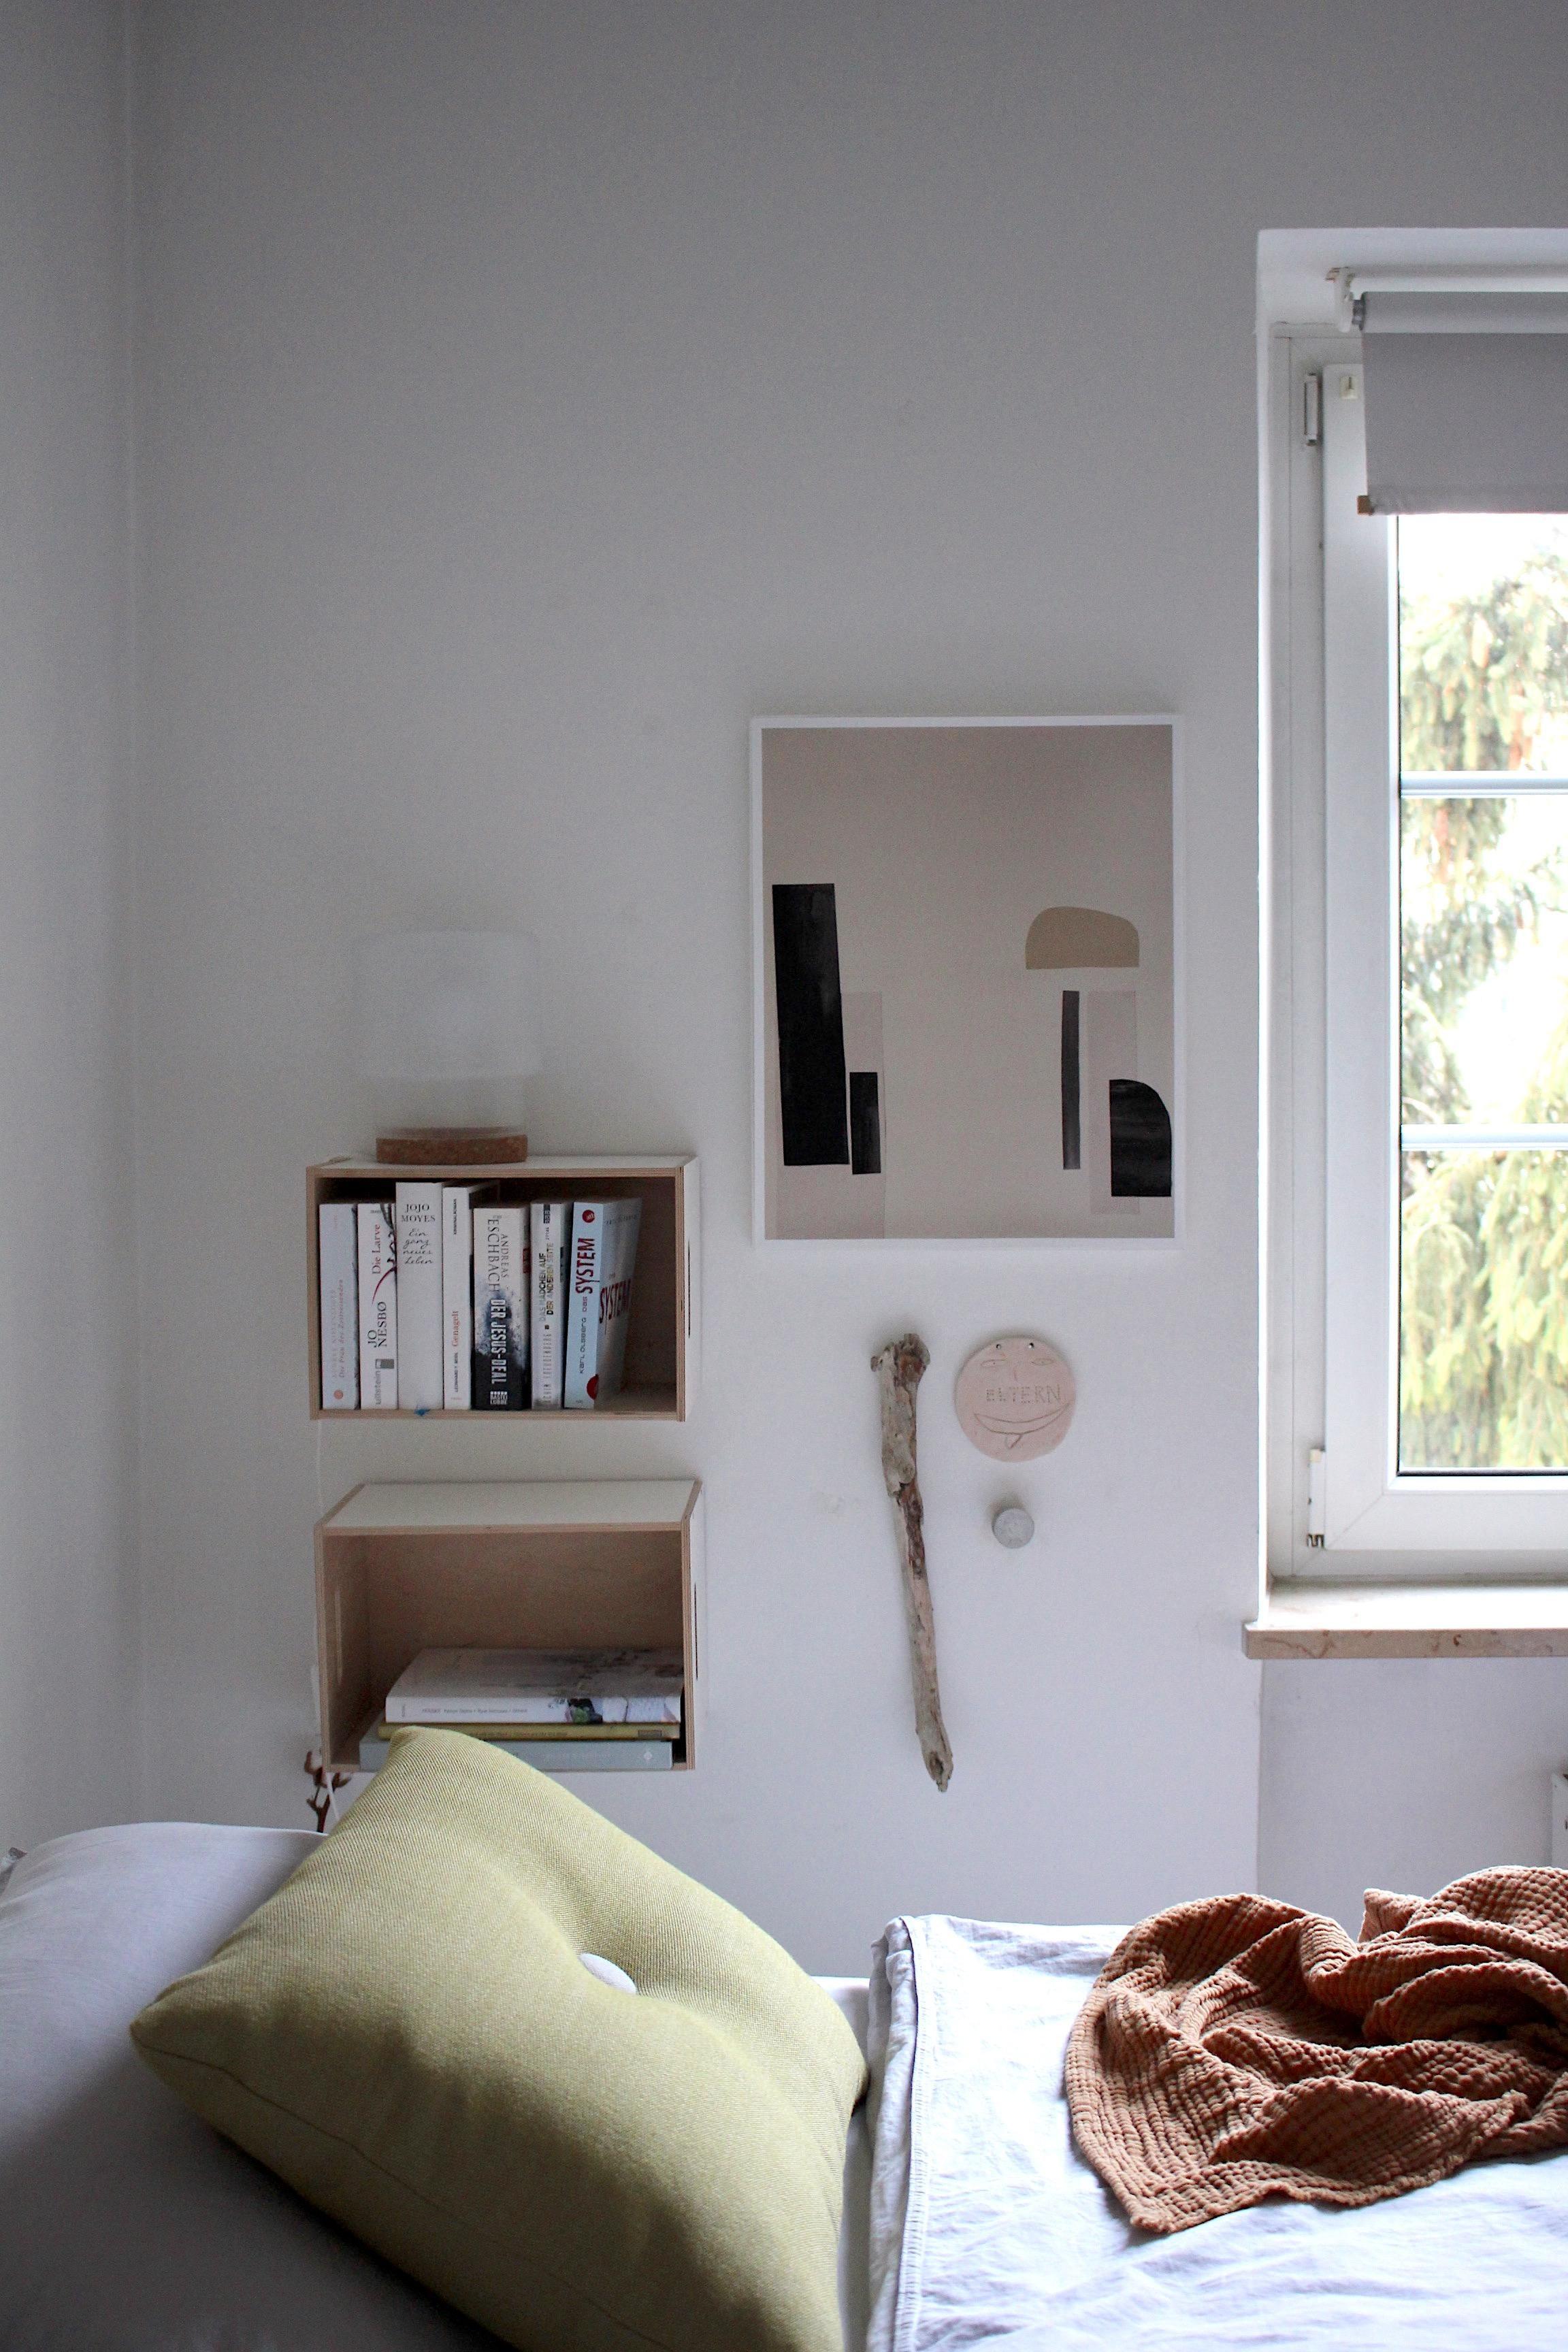 Neuer Druck im Schlafzimmer
#printlove #betonstudio #bedroomdecor #bedroom